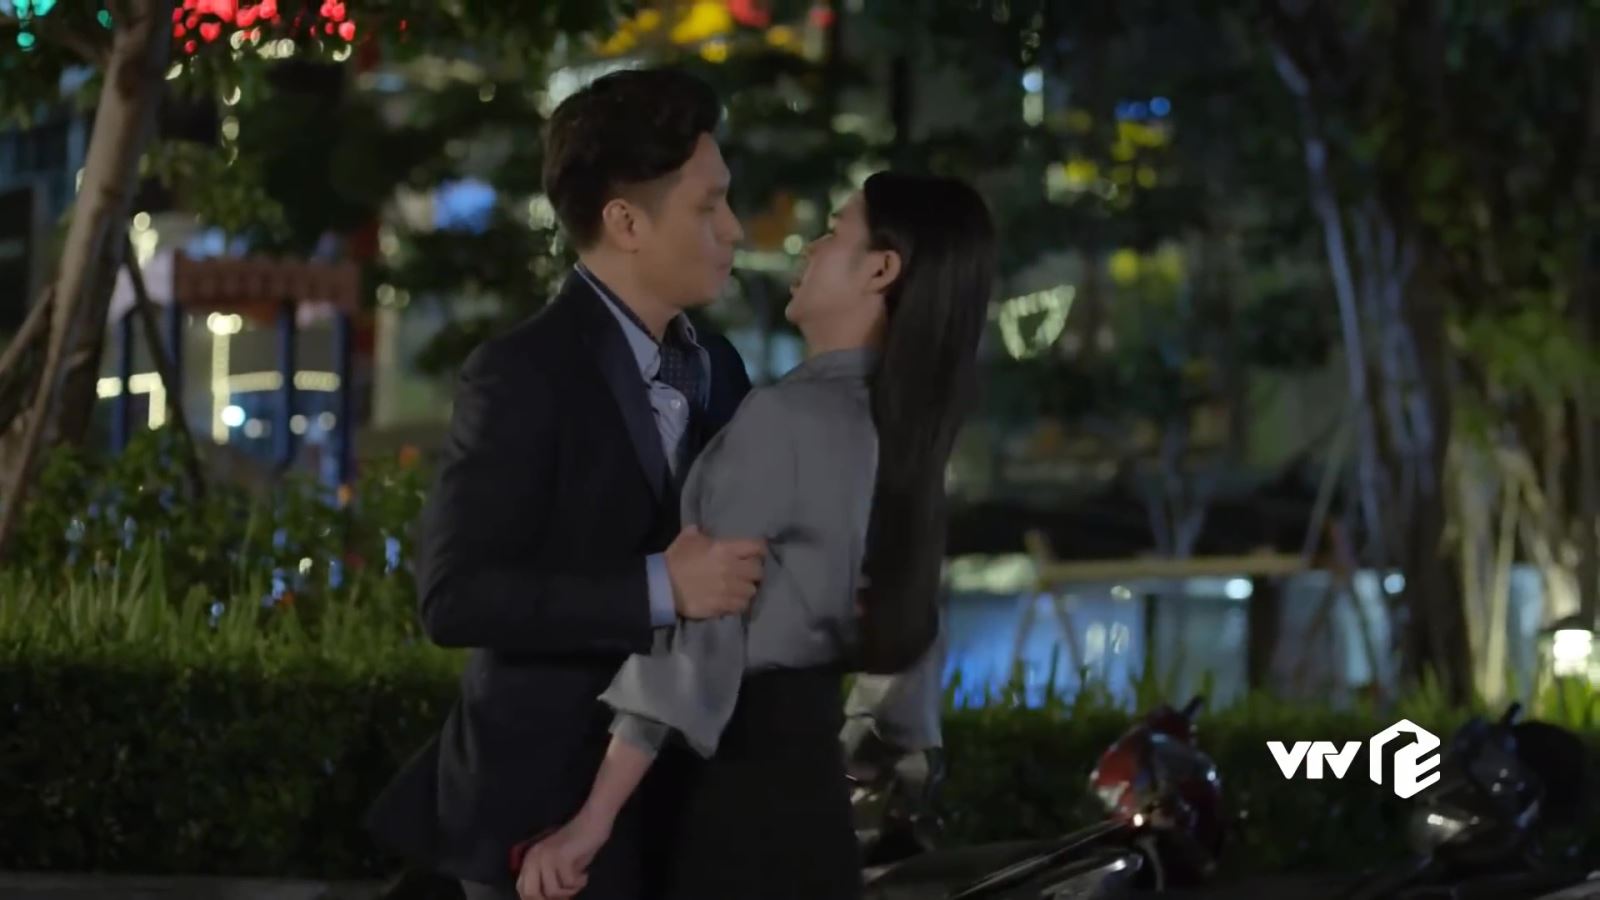 VIDEO 'Hướng dương ngược nắng': Hoàng liều hôn Minh, Kiên lại khiến Châu thất vọng